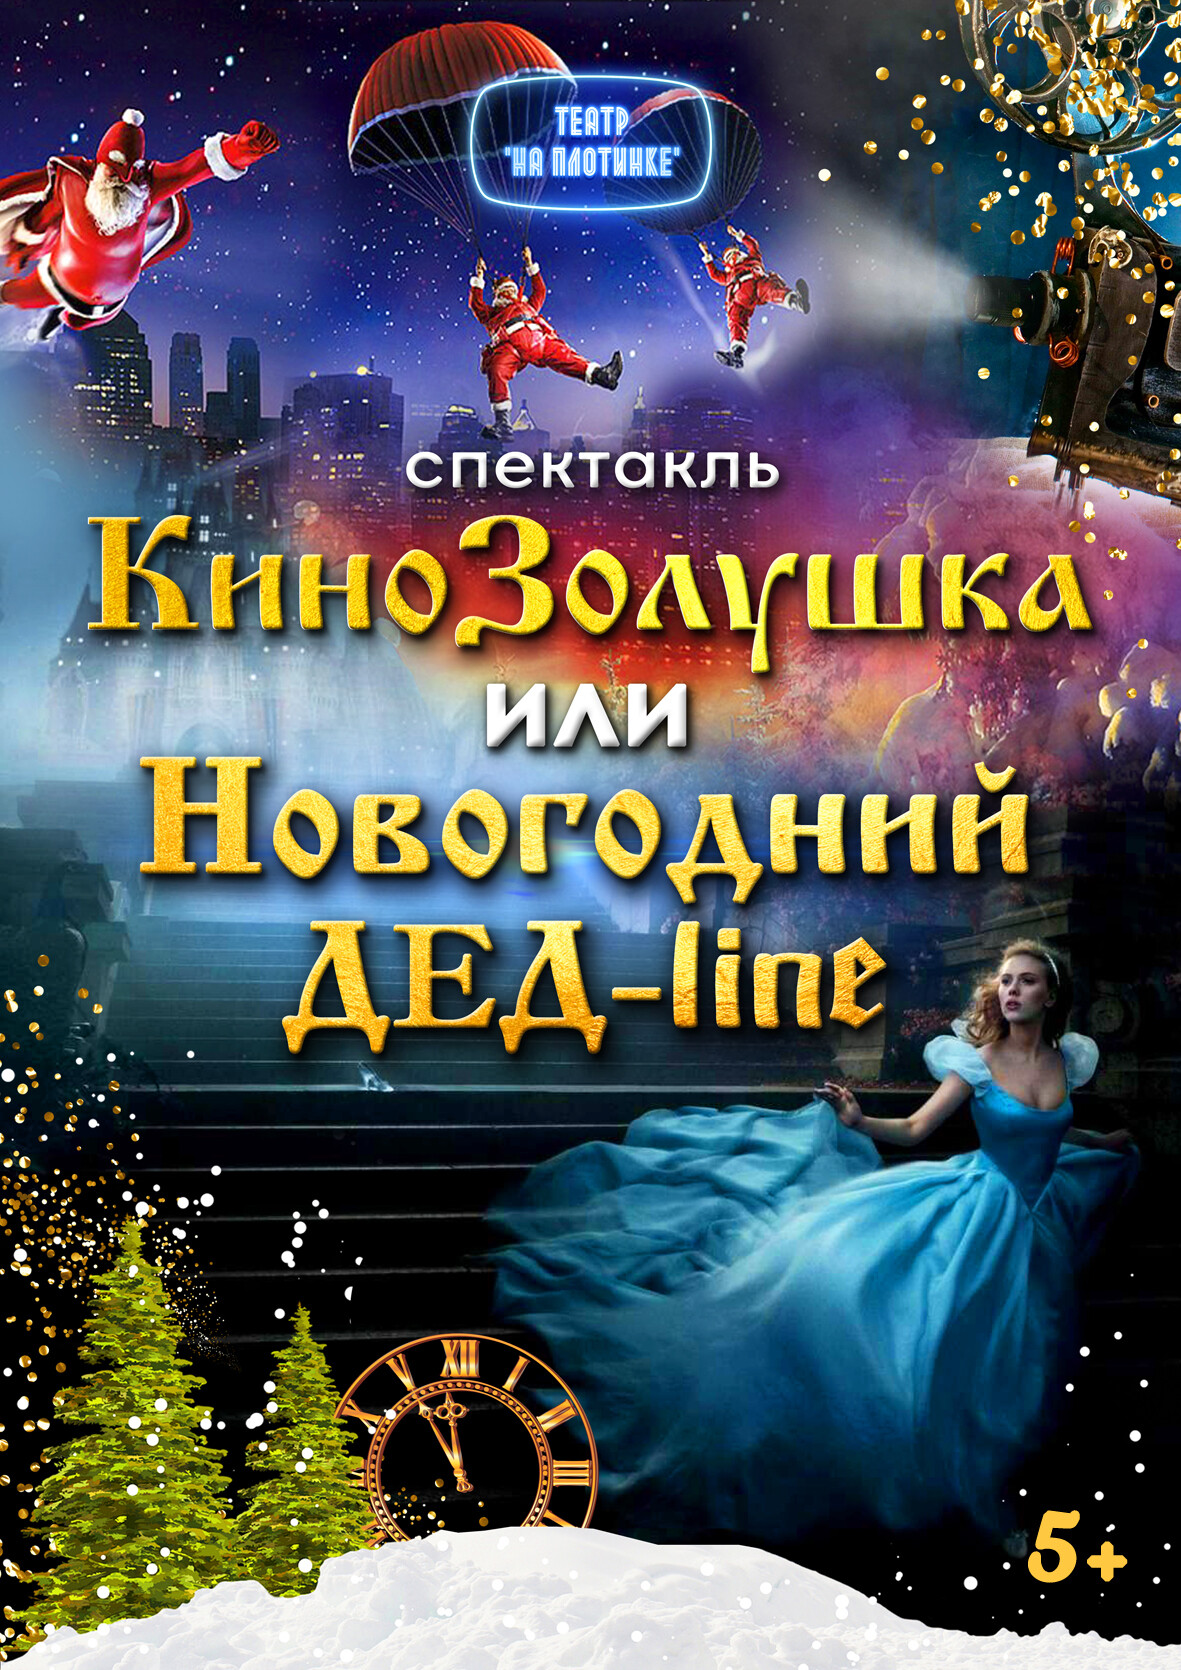 спектакль для детей 5+ в Екатеринбурге декабрь, январь